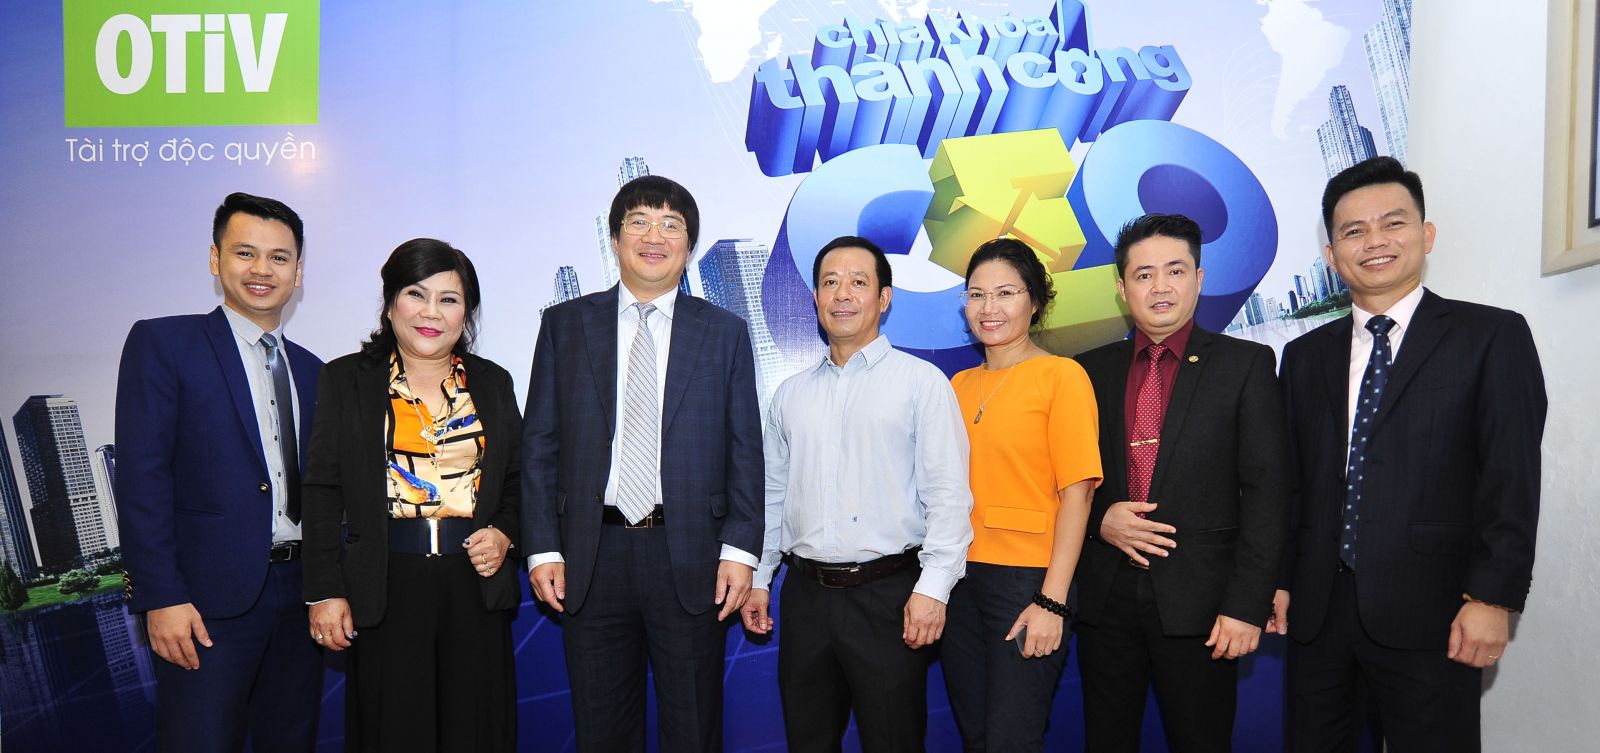 Bà Trần Thanh Hà chụp ảnh lưu niệm cùng các Chuyên gia và Doanh nhân trong chương trình CEO – Chìa khóa thành công của VTV1